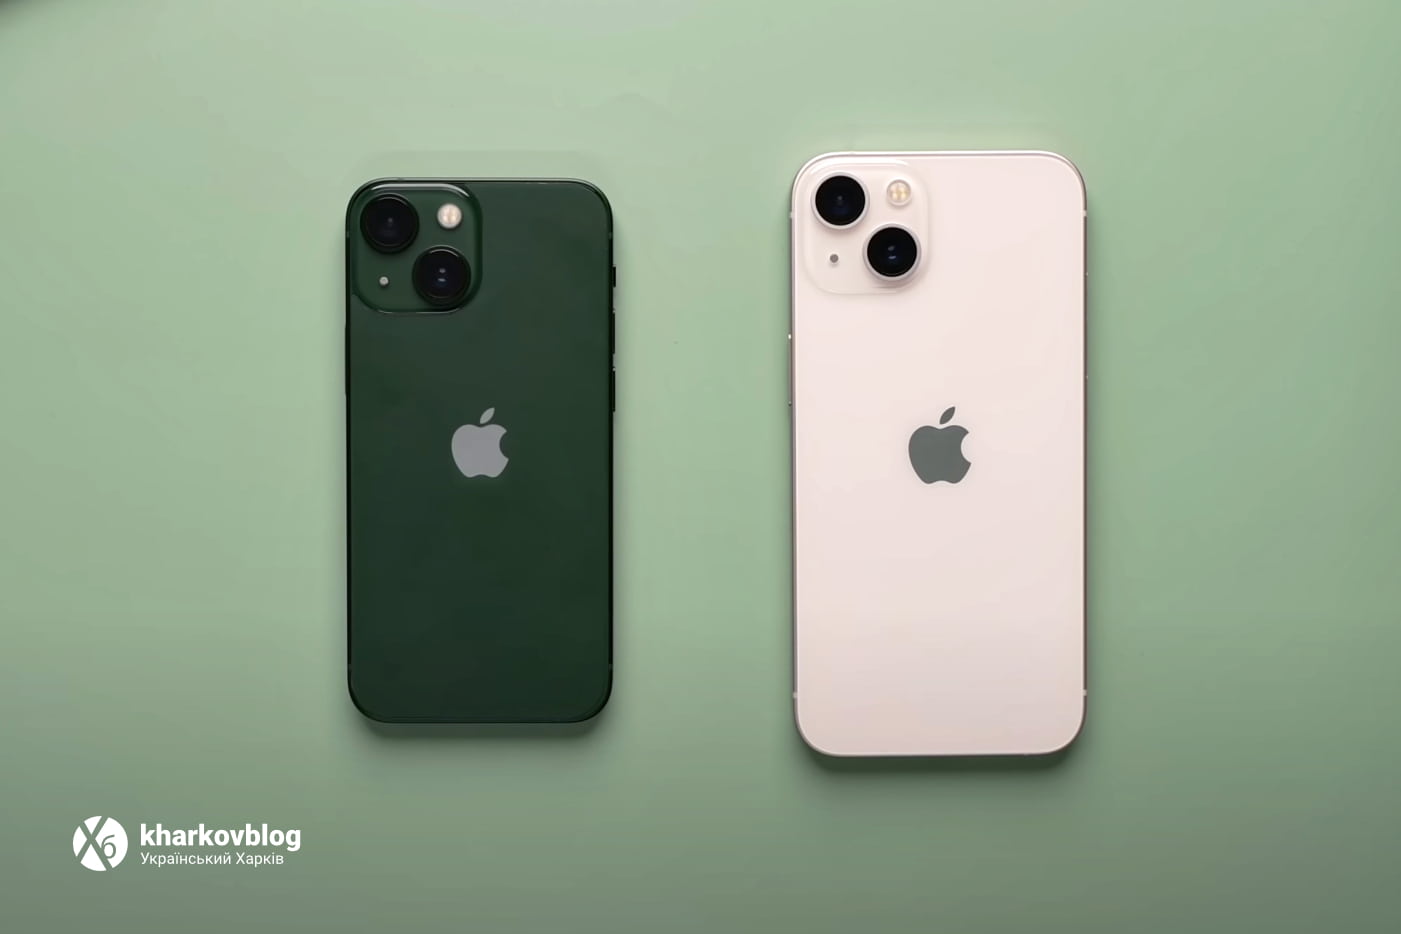 Сравнение размеров iPhone 13 и iPhone 13 mini